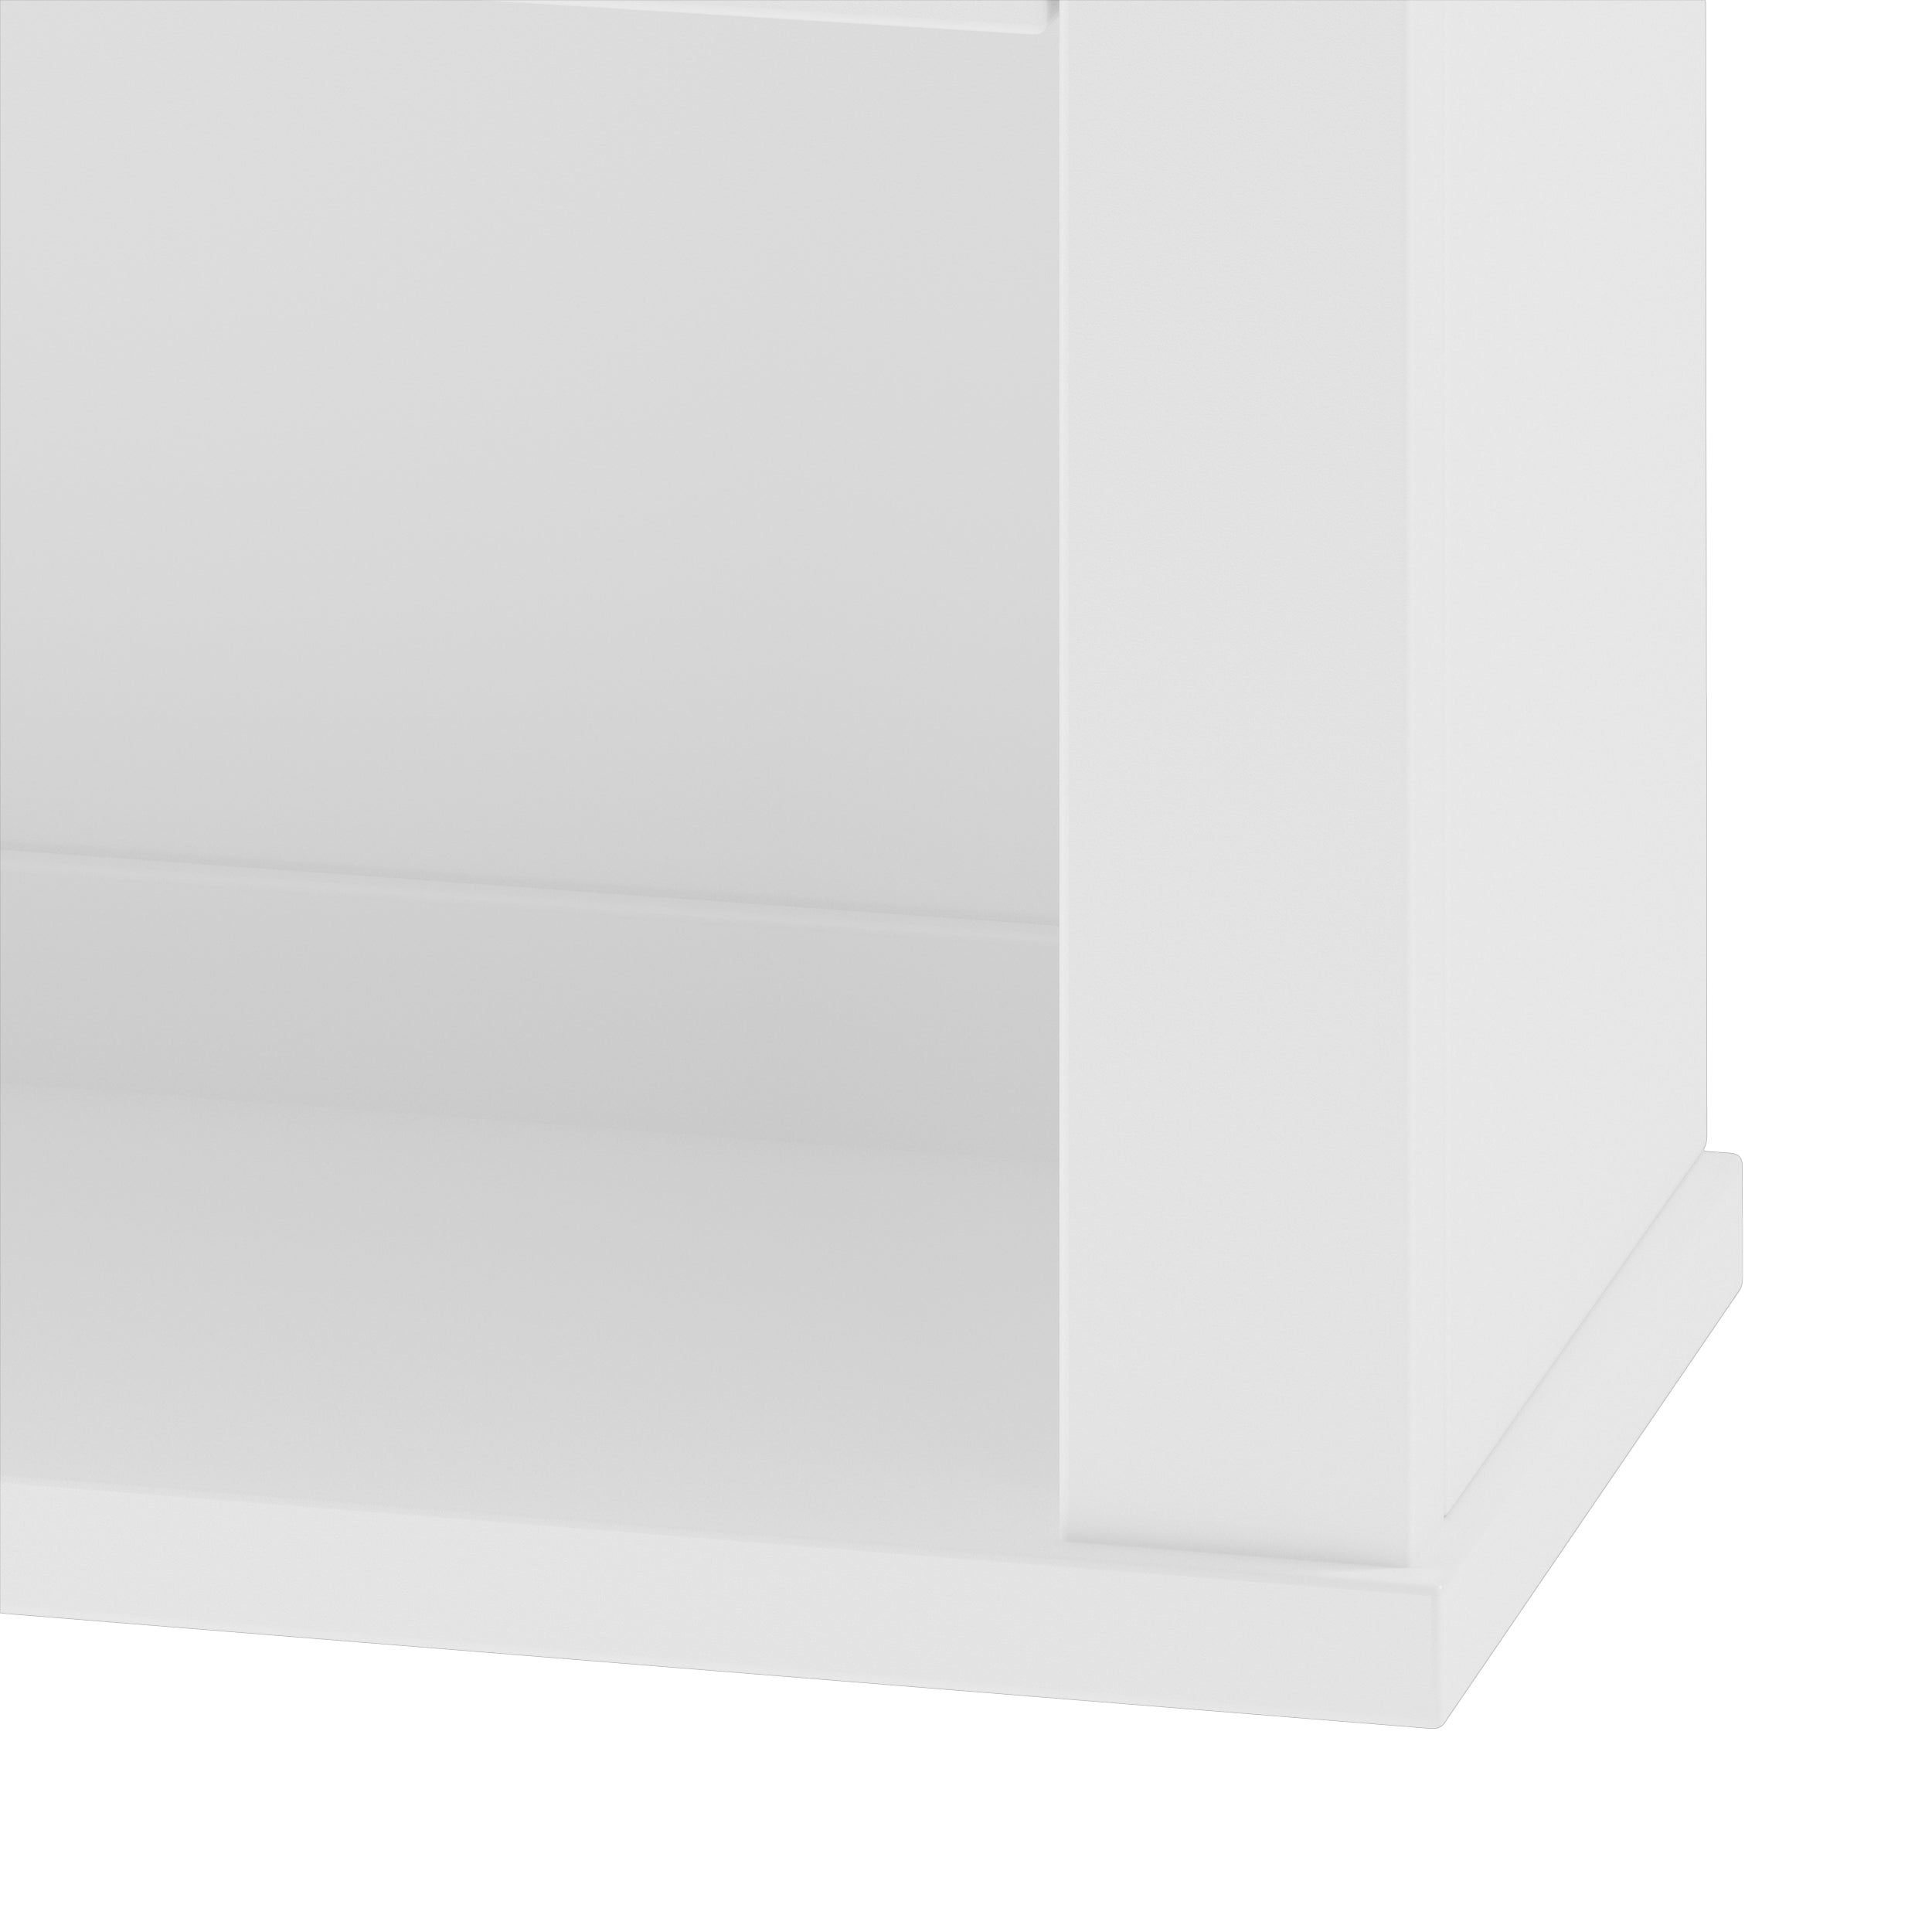 24" x 28" Minimalist Wall Cabinet